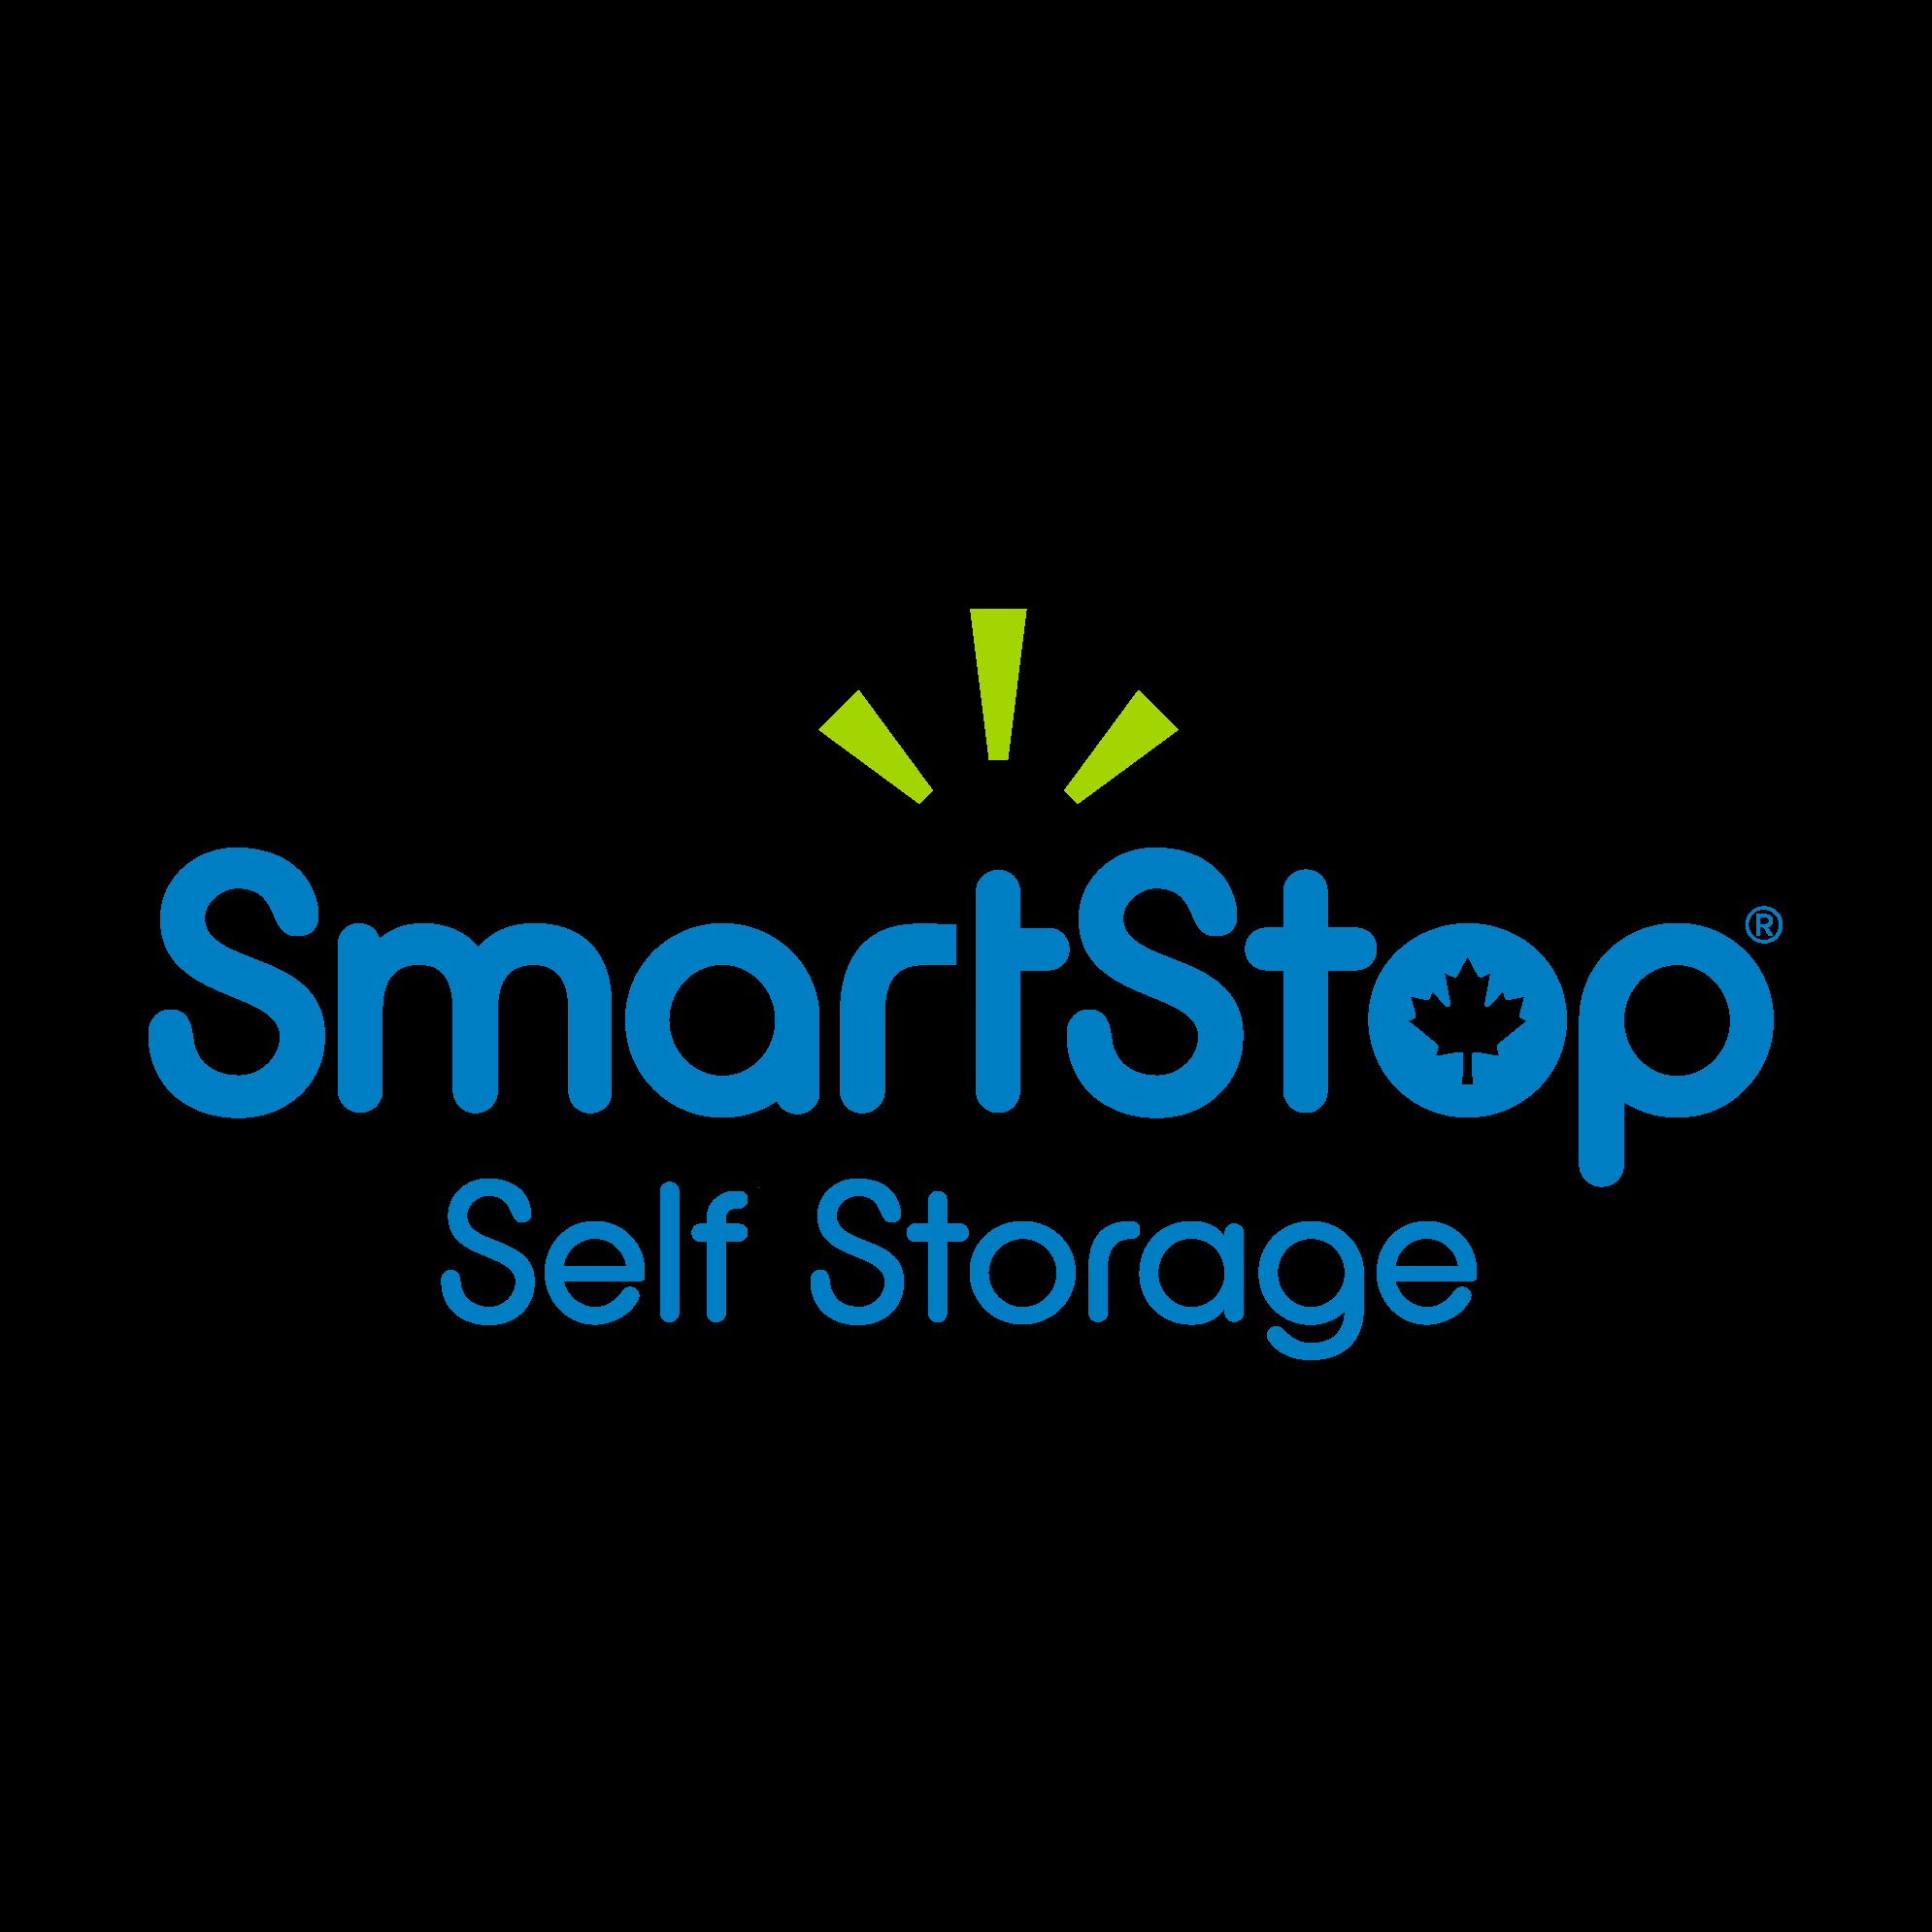 SmartStop Self Storage - Toronto - Self-Storage